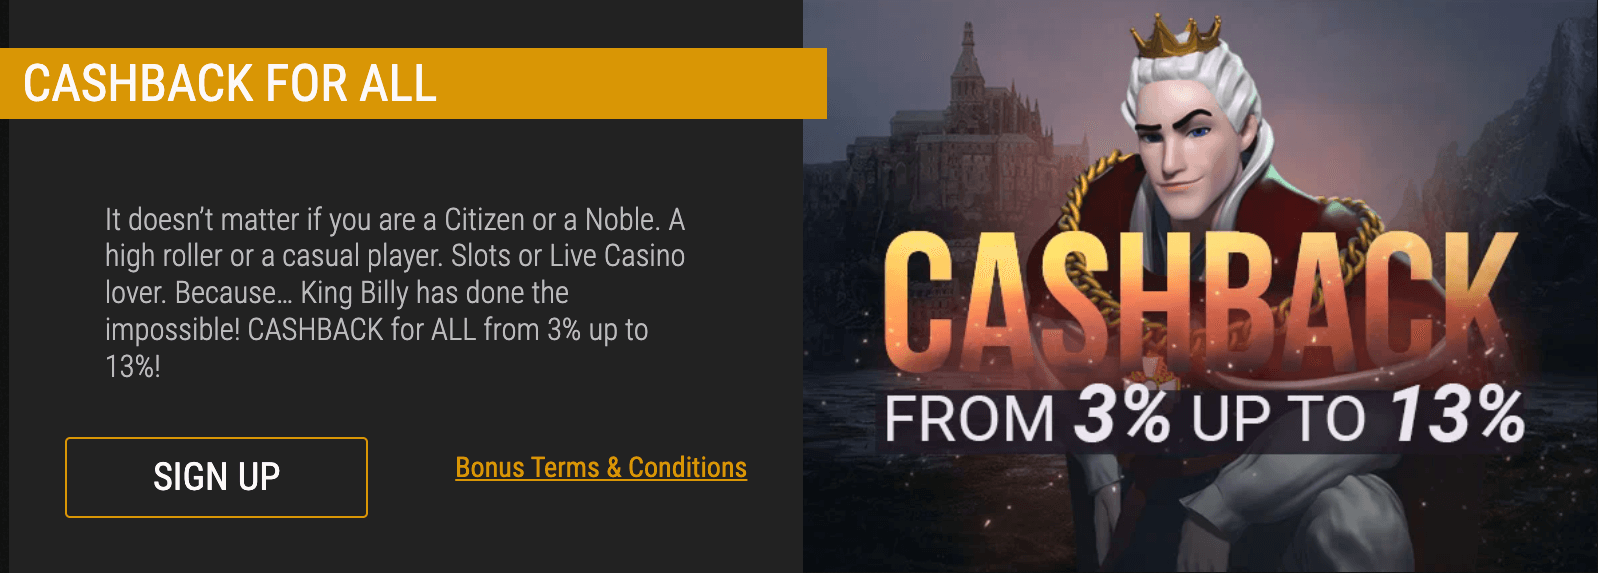 King Billy casino cashback for all offer